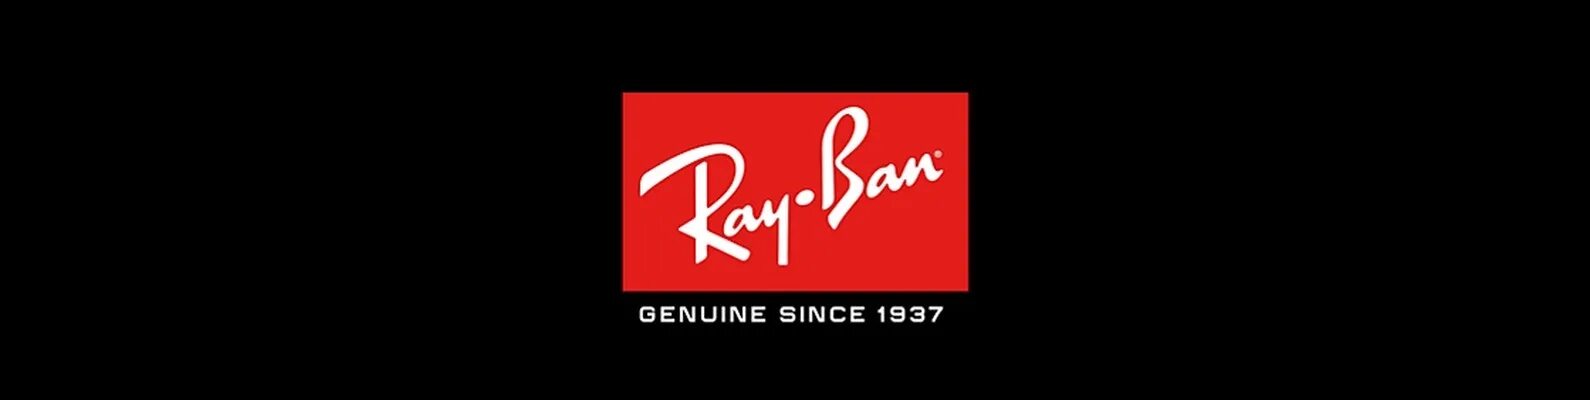 Ред бан. Ray ban логотип. Ray ban Genuine since 1937. Ray ban очки логотип.